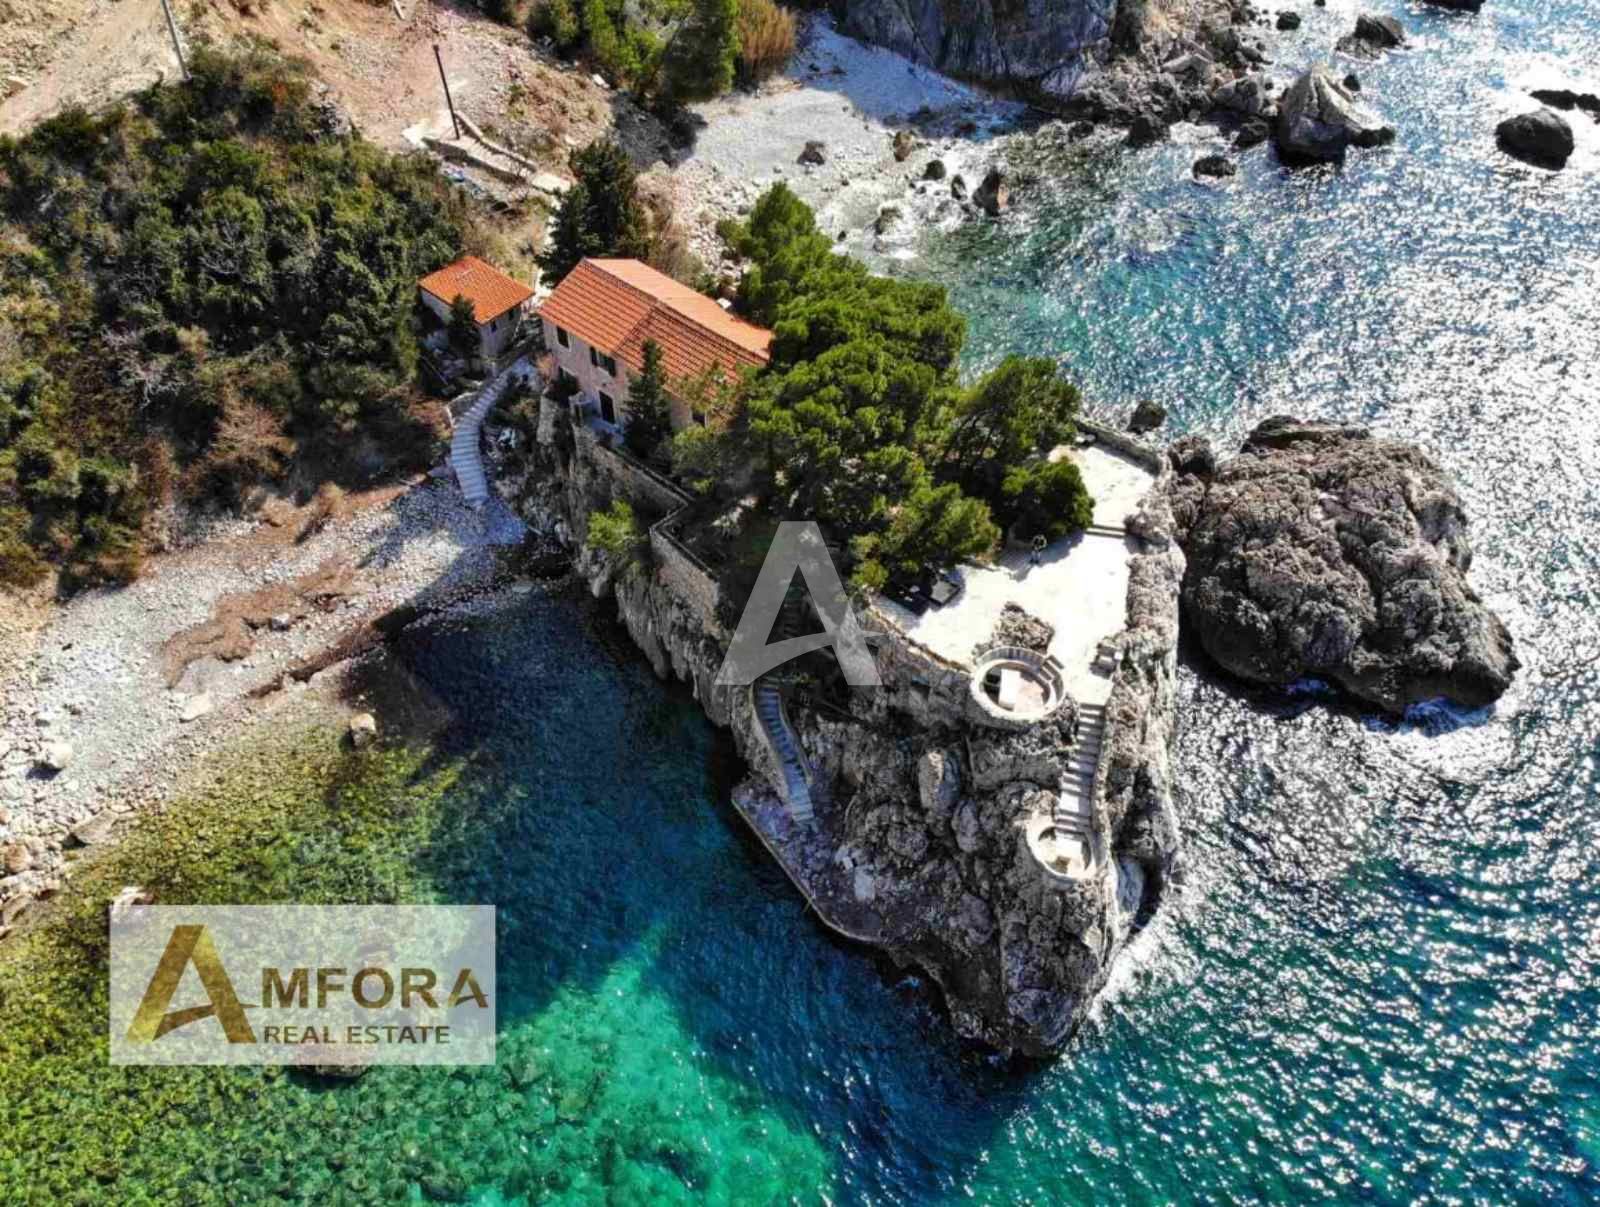 amforaproperty.com/Mali raj na Mediteranu! Vila iz 14 vijeka sa svojim poluostrvom!